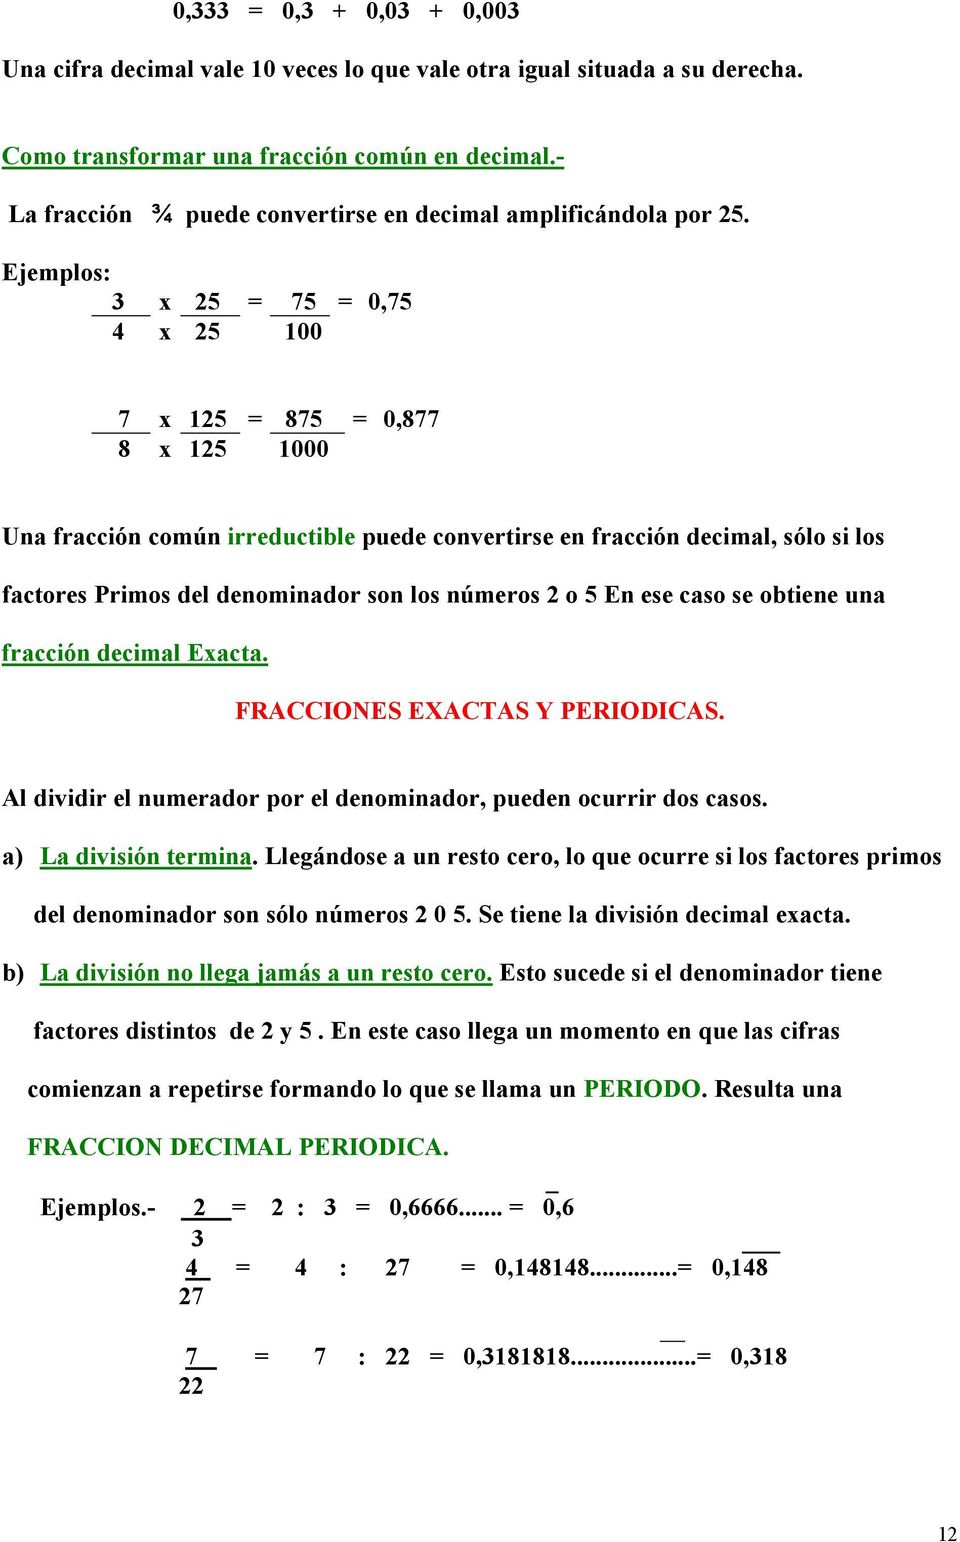 Ejemplos: 3 x 25 = 75 = 0,75 4 x 25 100 7 x 125 = 875 = 0,877 8 x 125 1000 Una fracción común irreductible puede convertirse en fracción decimal, sólo si los factores Primos del denominador son los